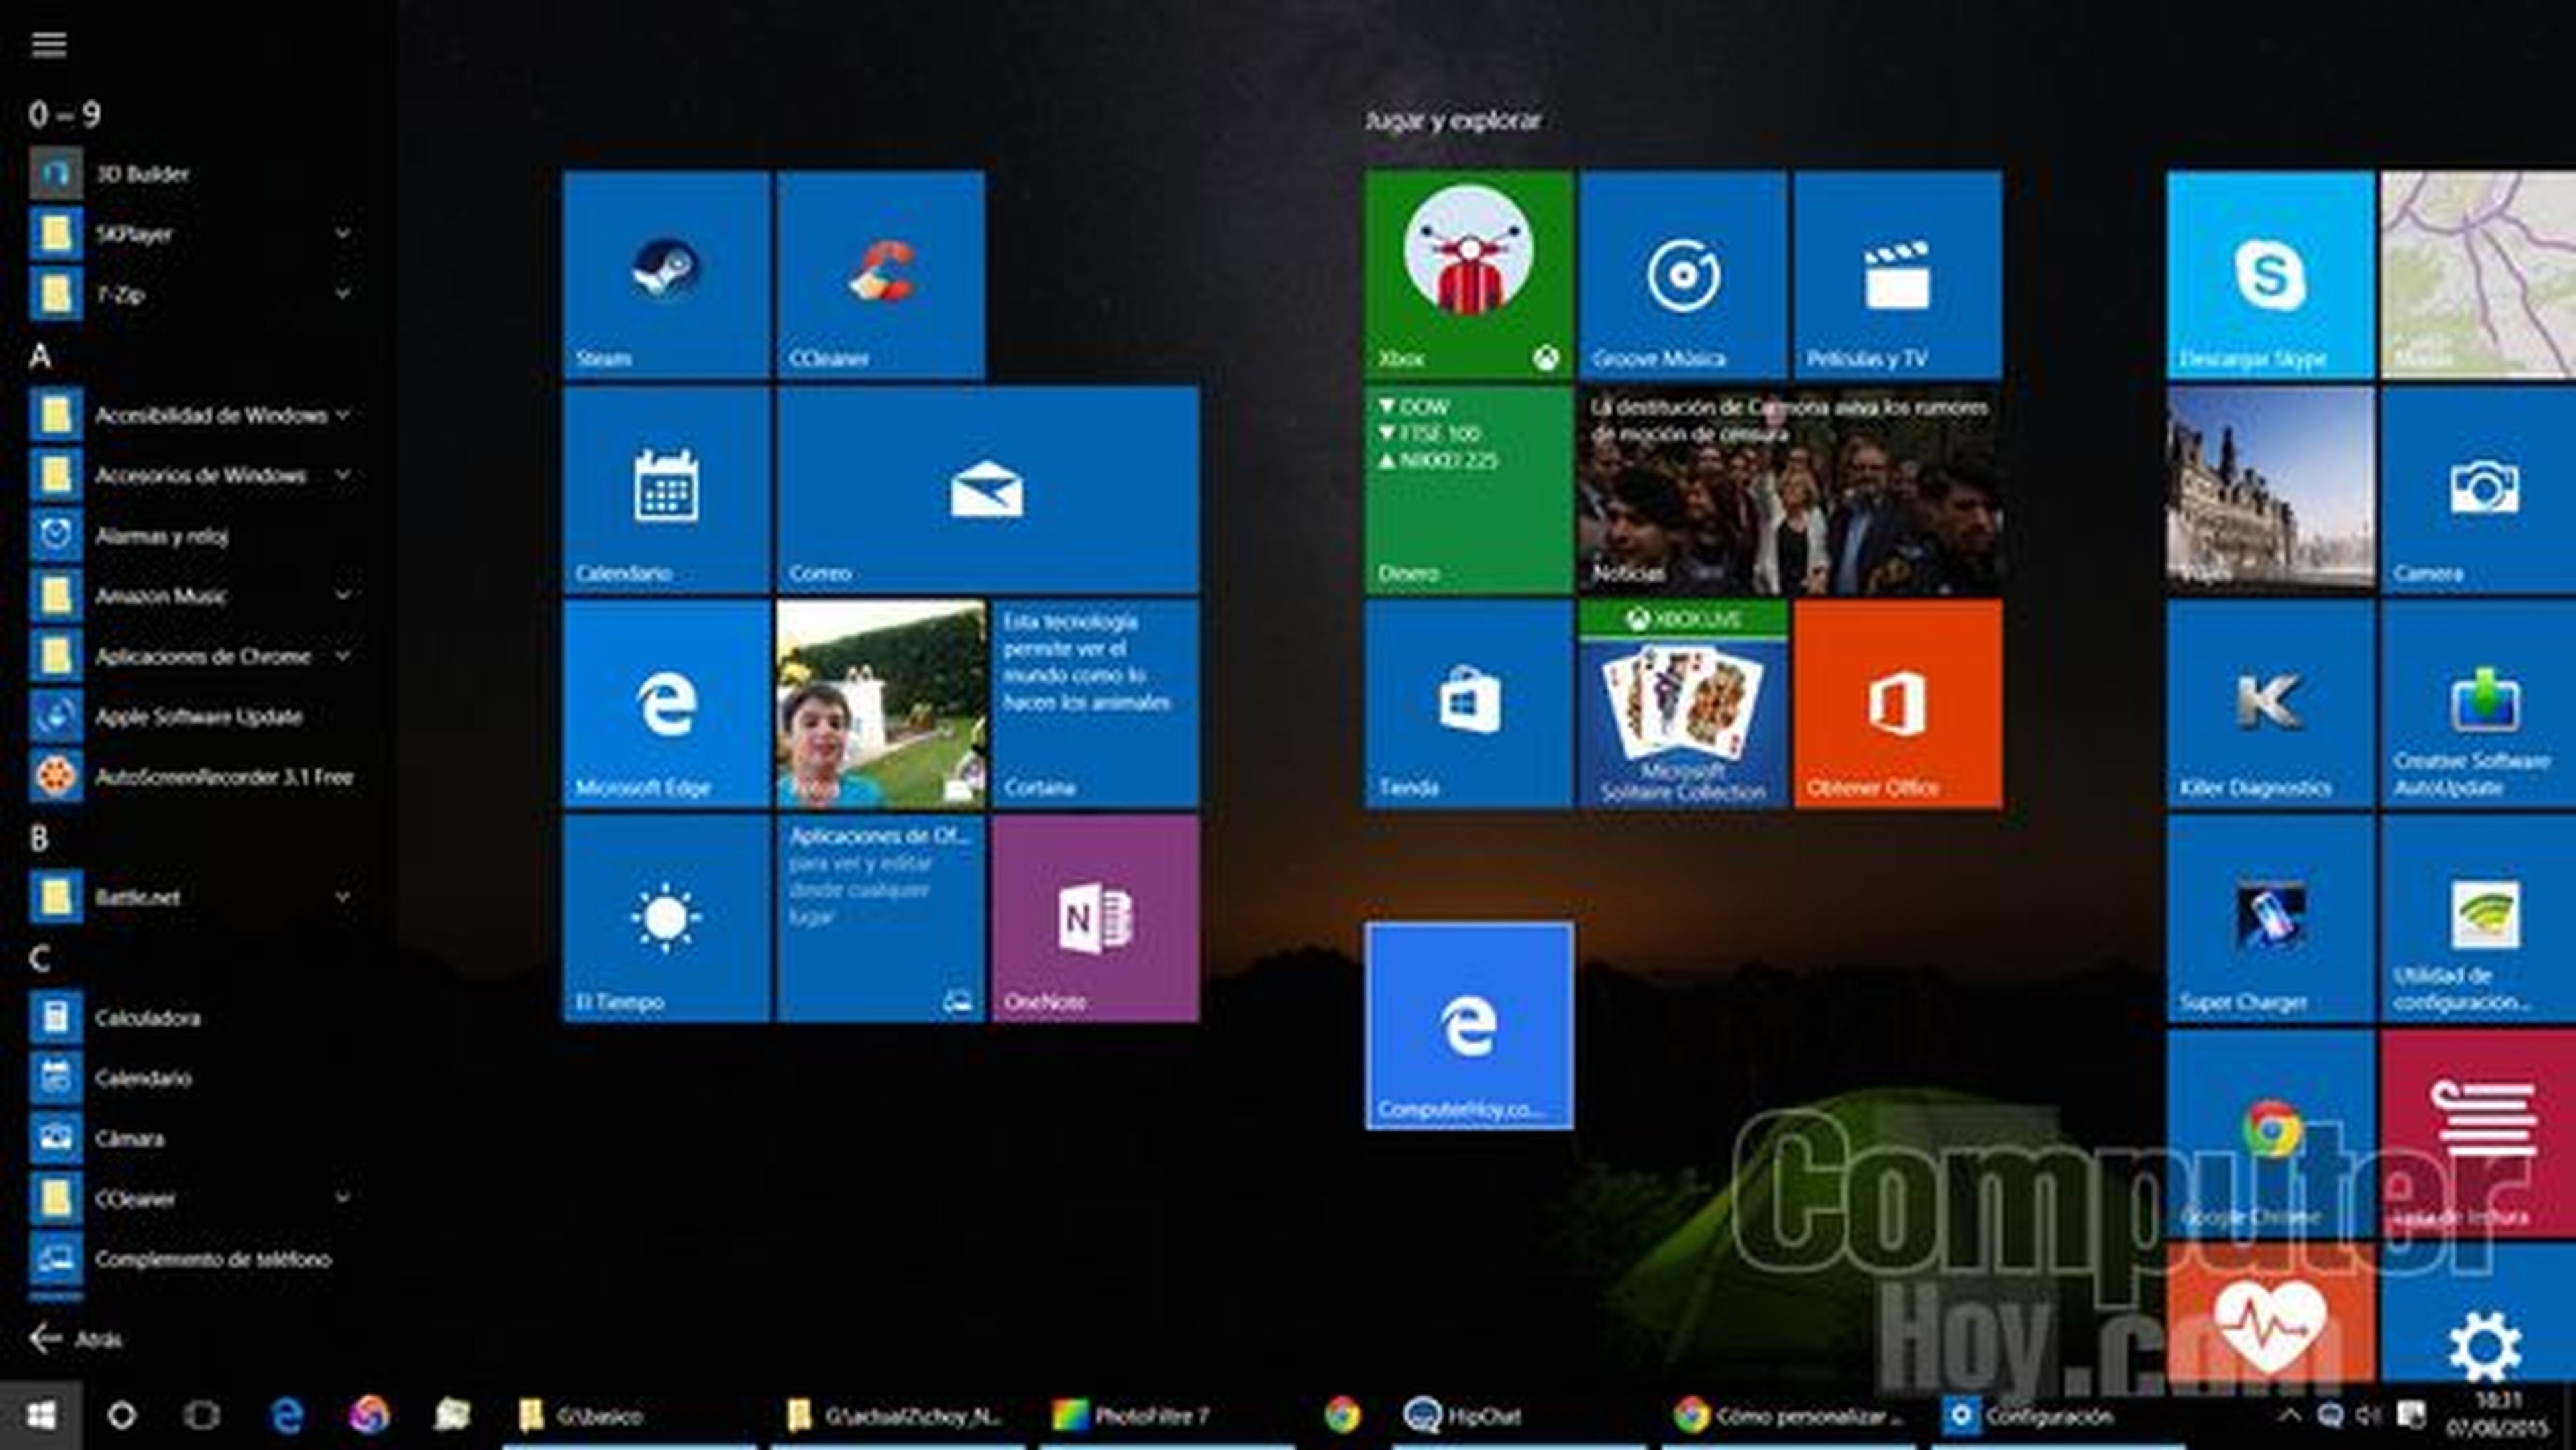 Cómo personalizar el Botón de Inicio en Windows 10